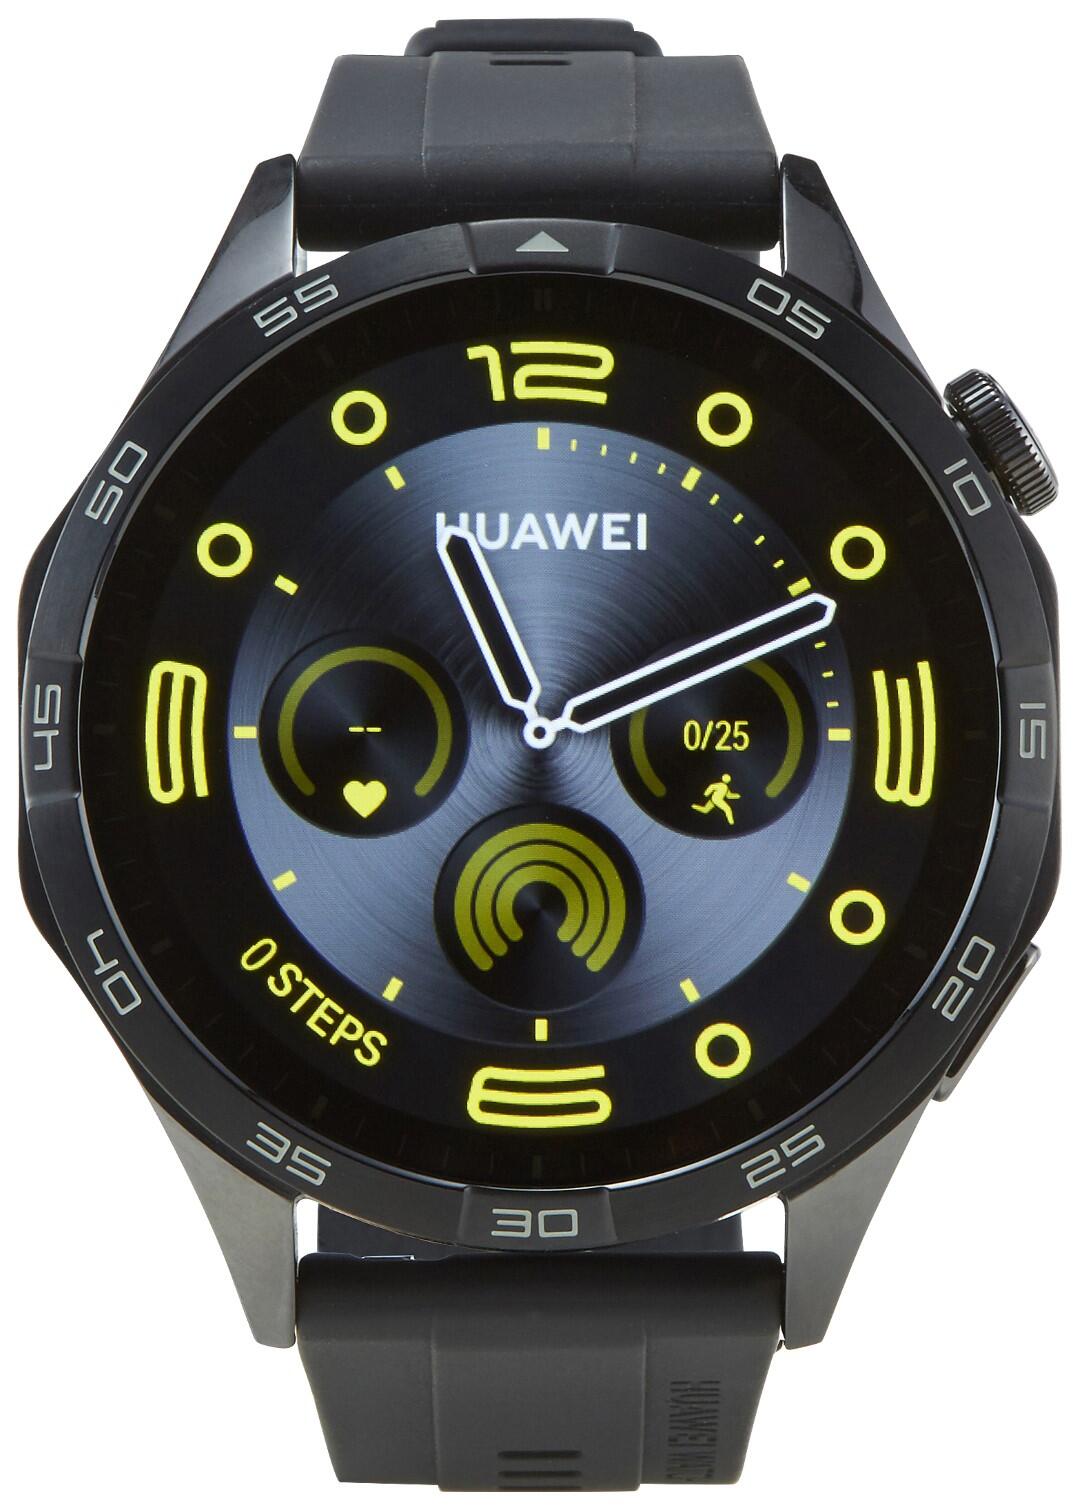 Watch GT 4 Huawei